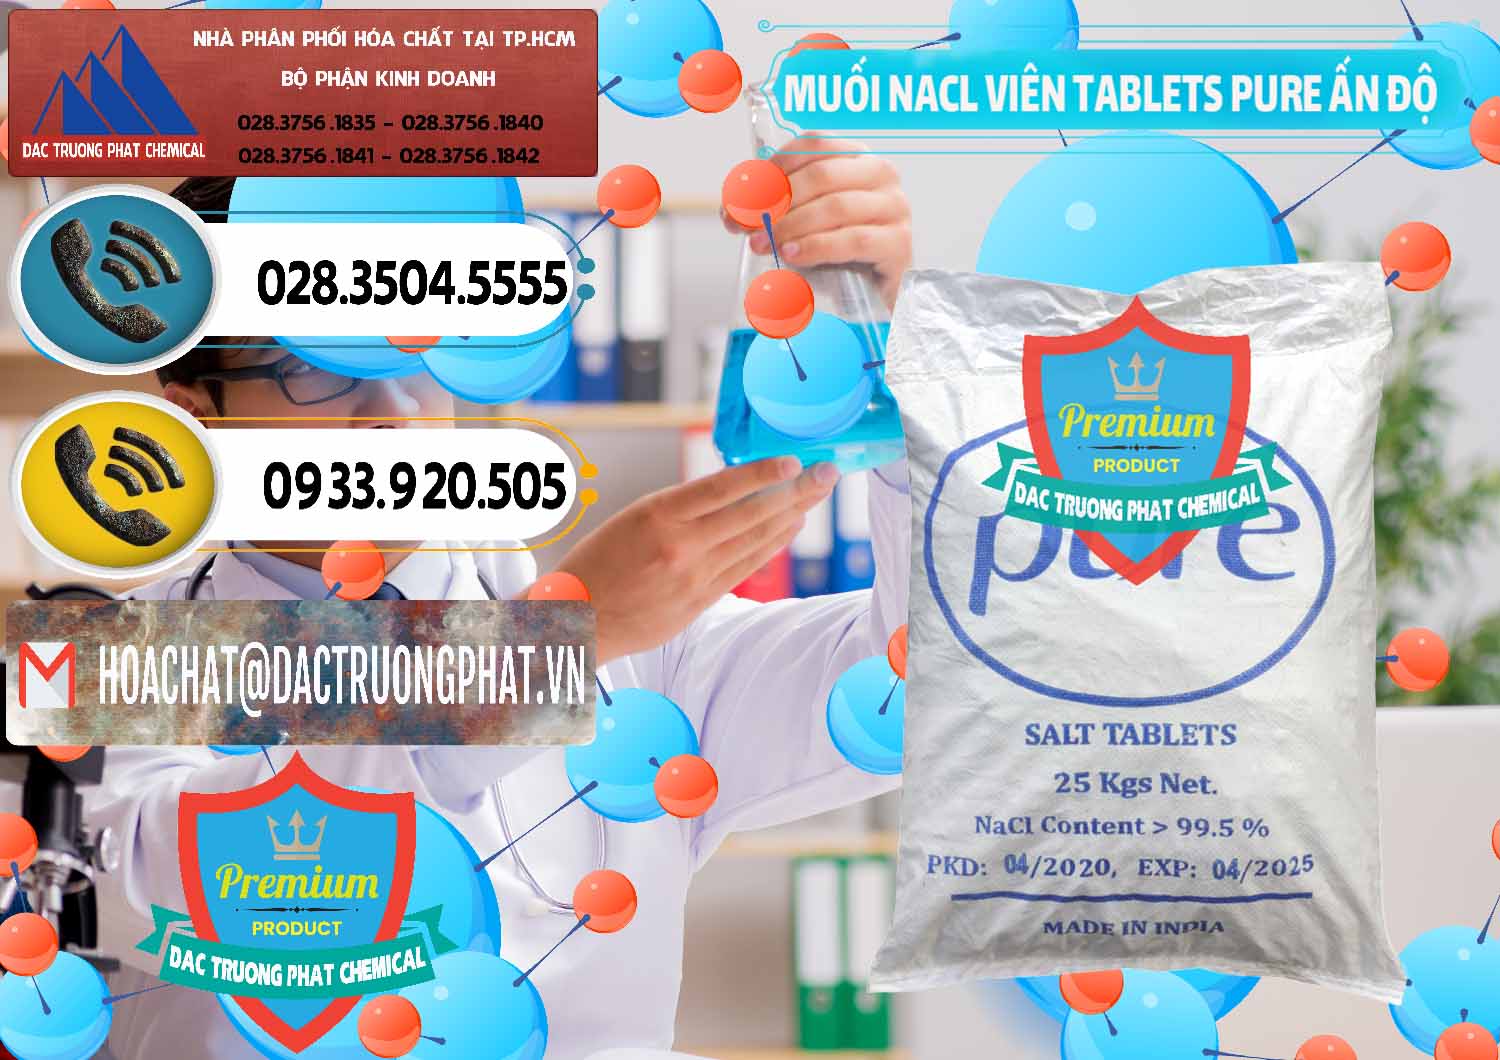 Nhà cung ứng ( bán ) Muối NaCL – Sodium Chloride Dạng Viên Tablets Pure Ấn Độ India - 0294 - Cung ứng _ phân phối hóa chất tại TP.HCM - hoachatdetnhuom.vn